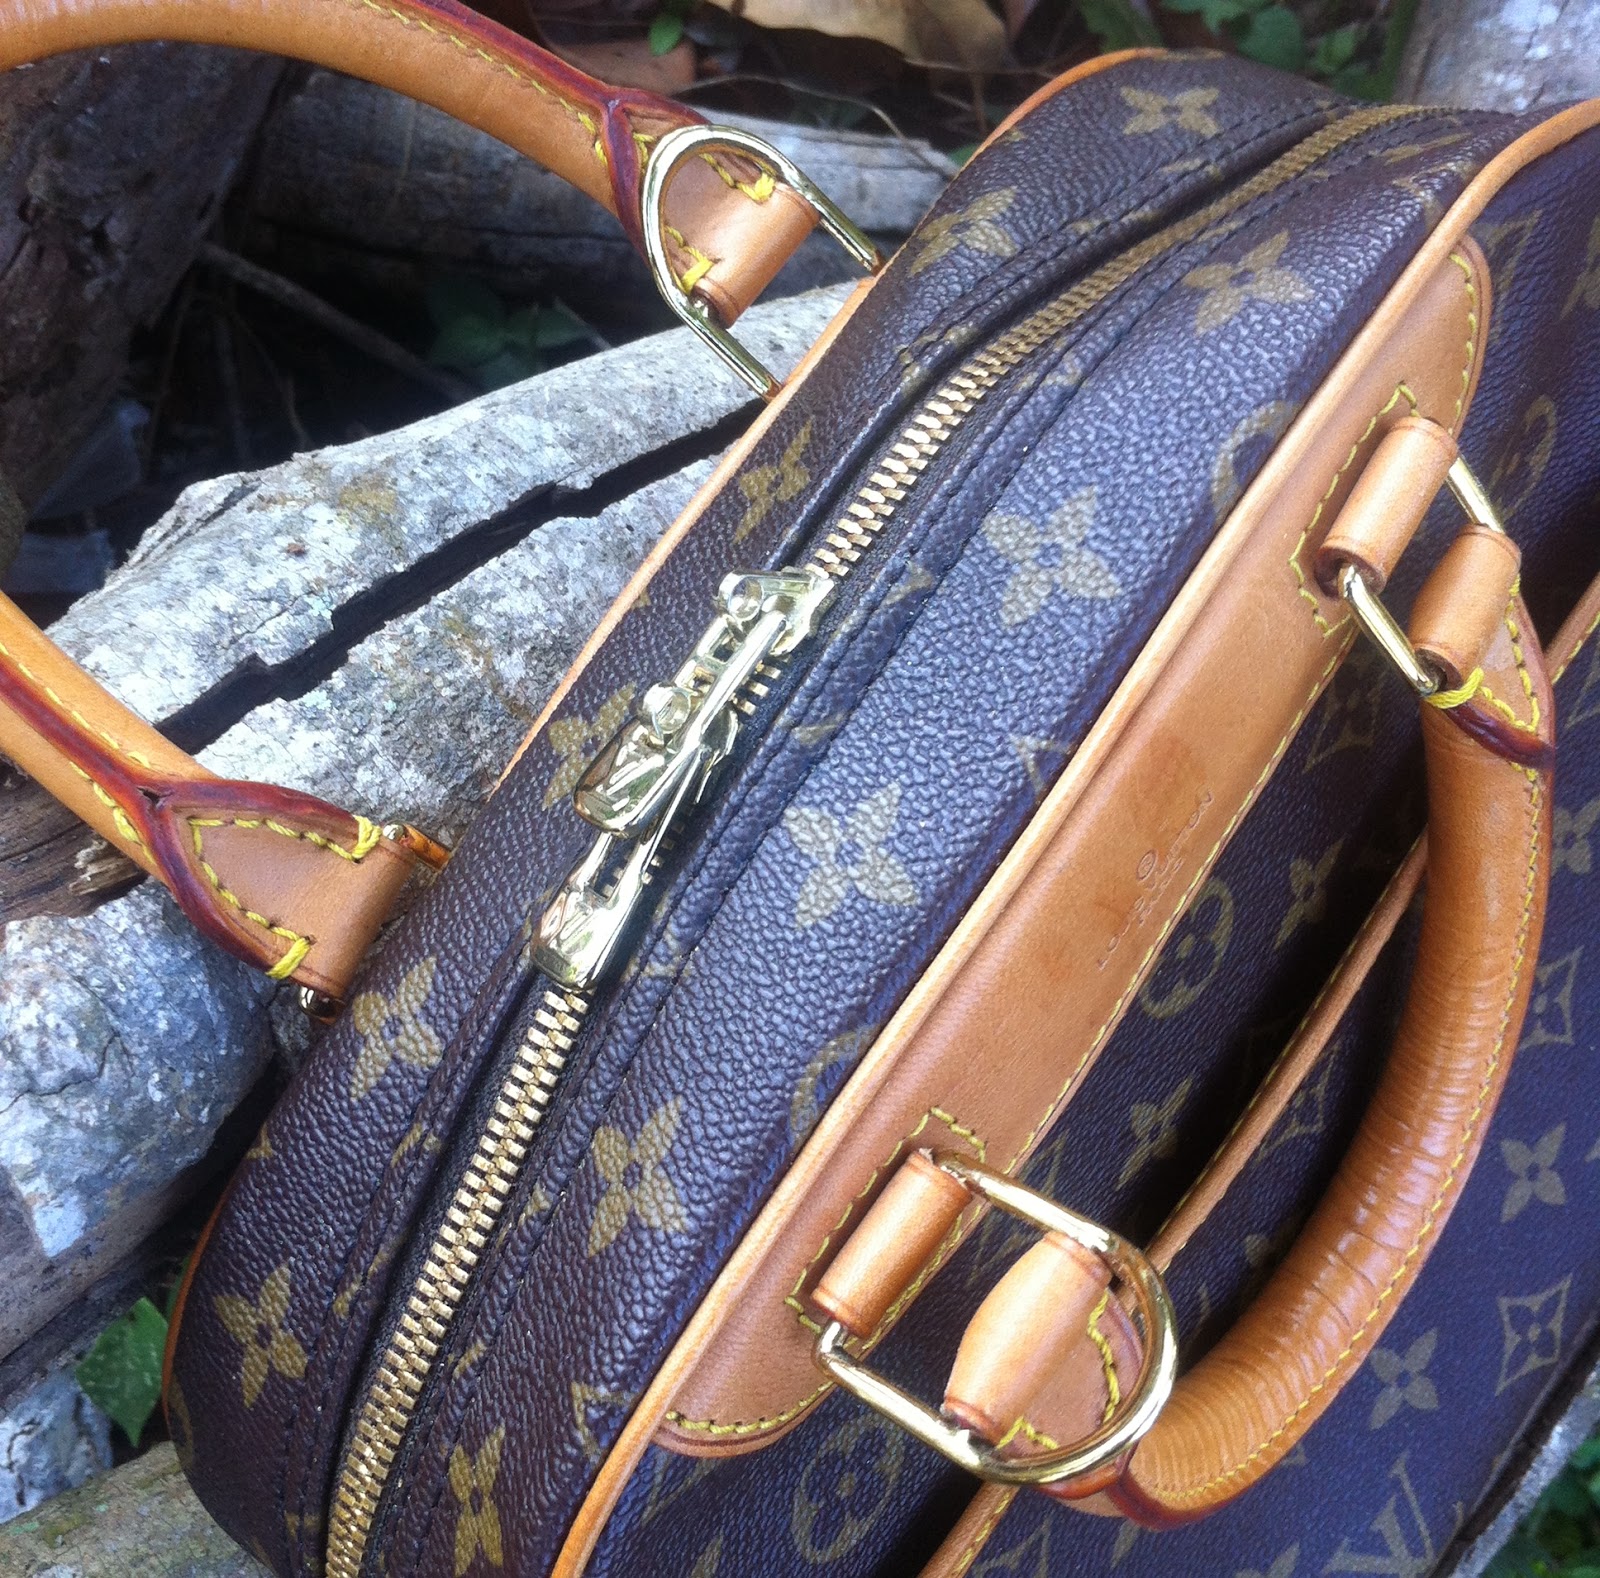 DYBUNDLE COLLECTION: Vintage Louis Vuitton Deauville handbag (sold)